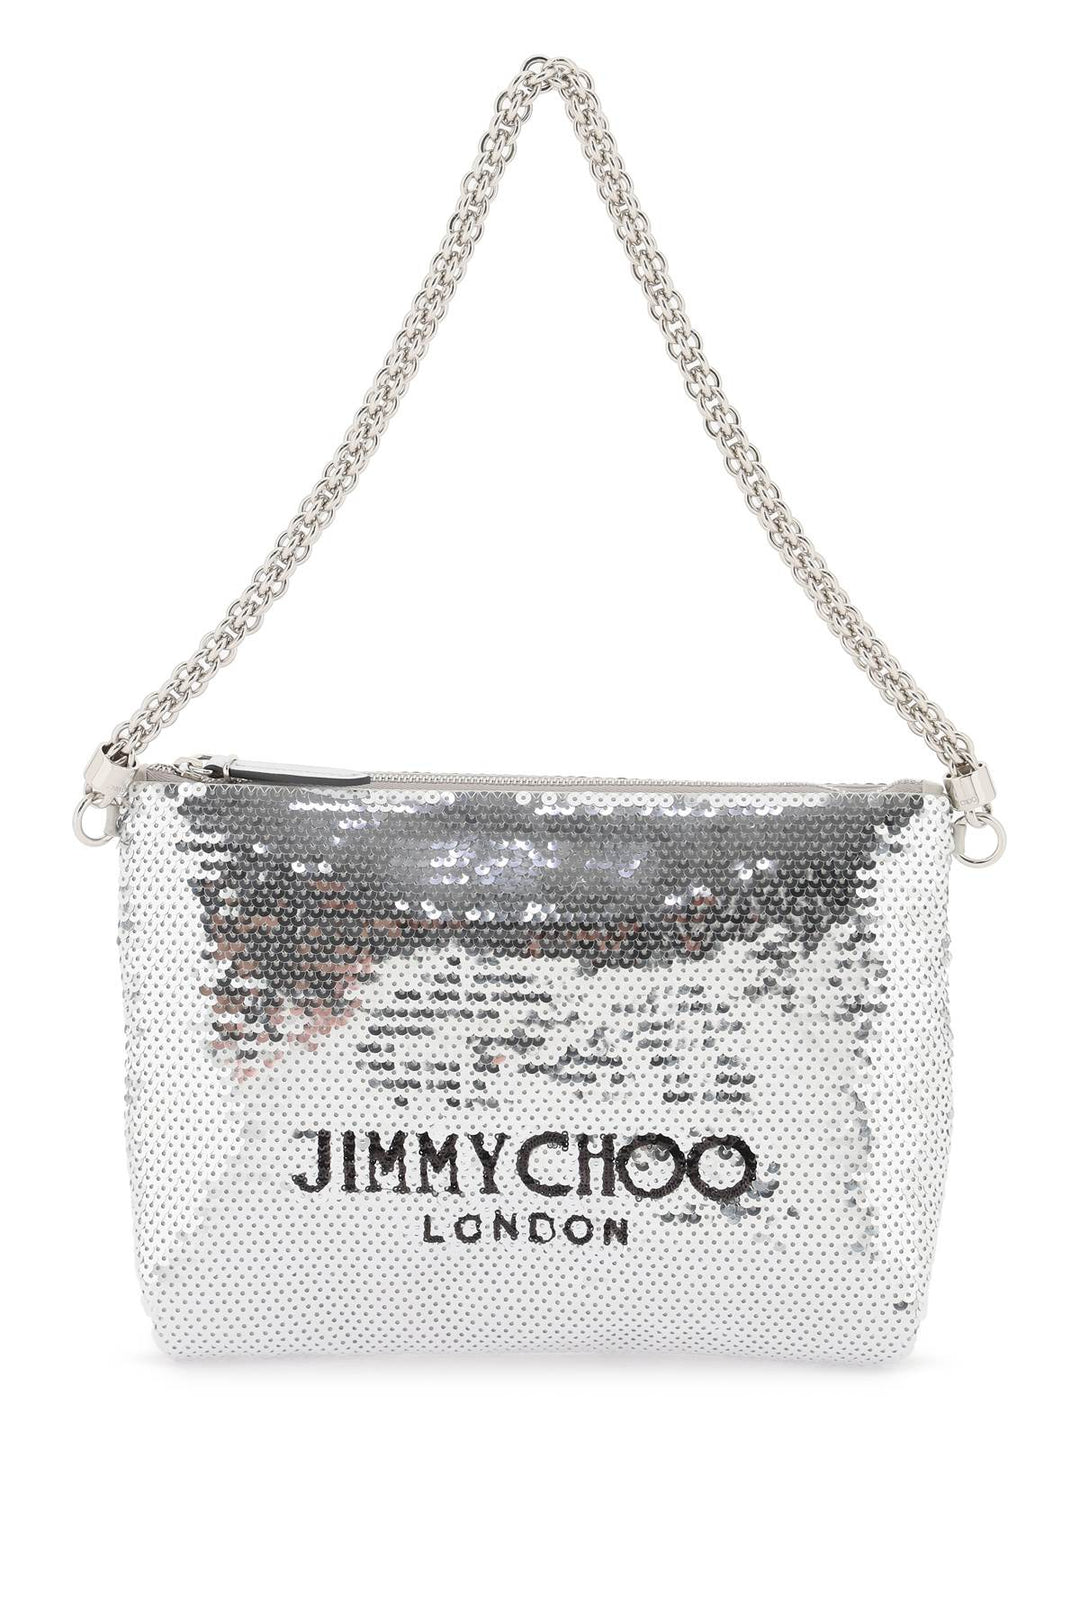 Jimmy Choo Callie Shoulder Bag   Argento